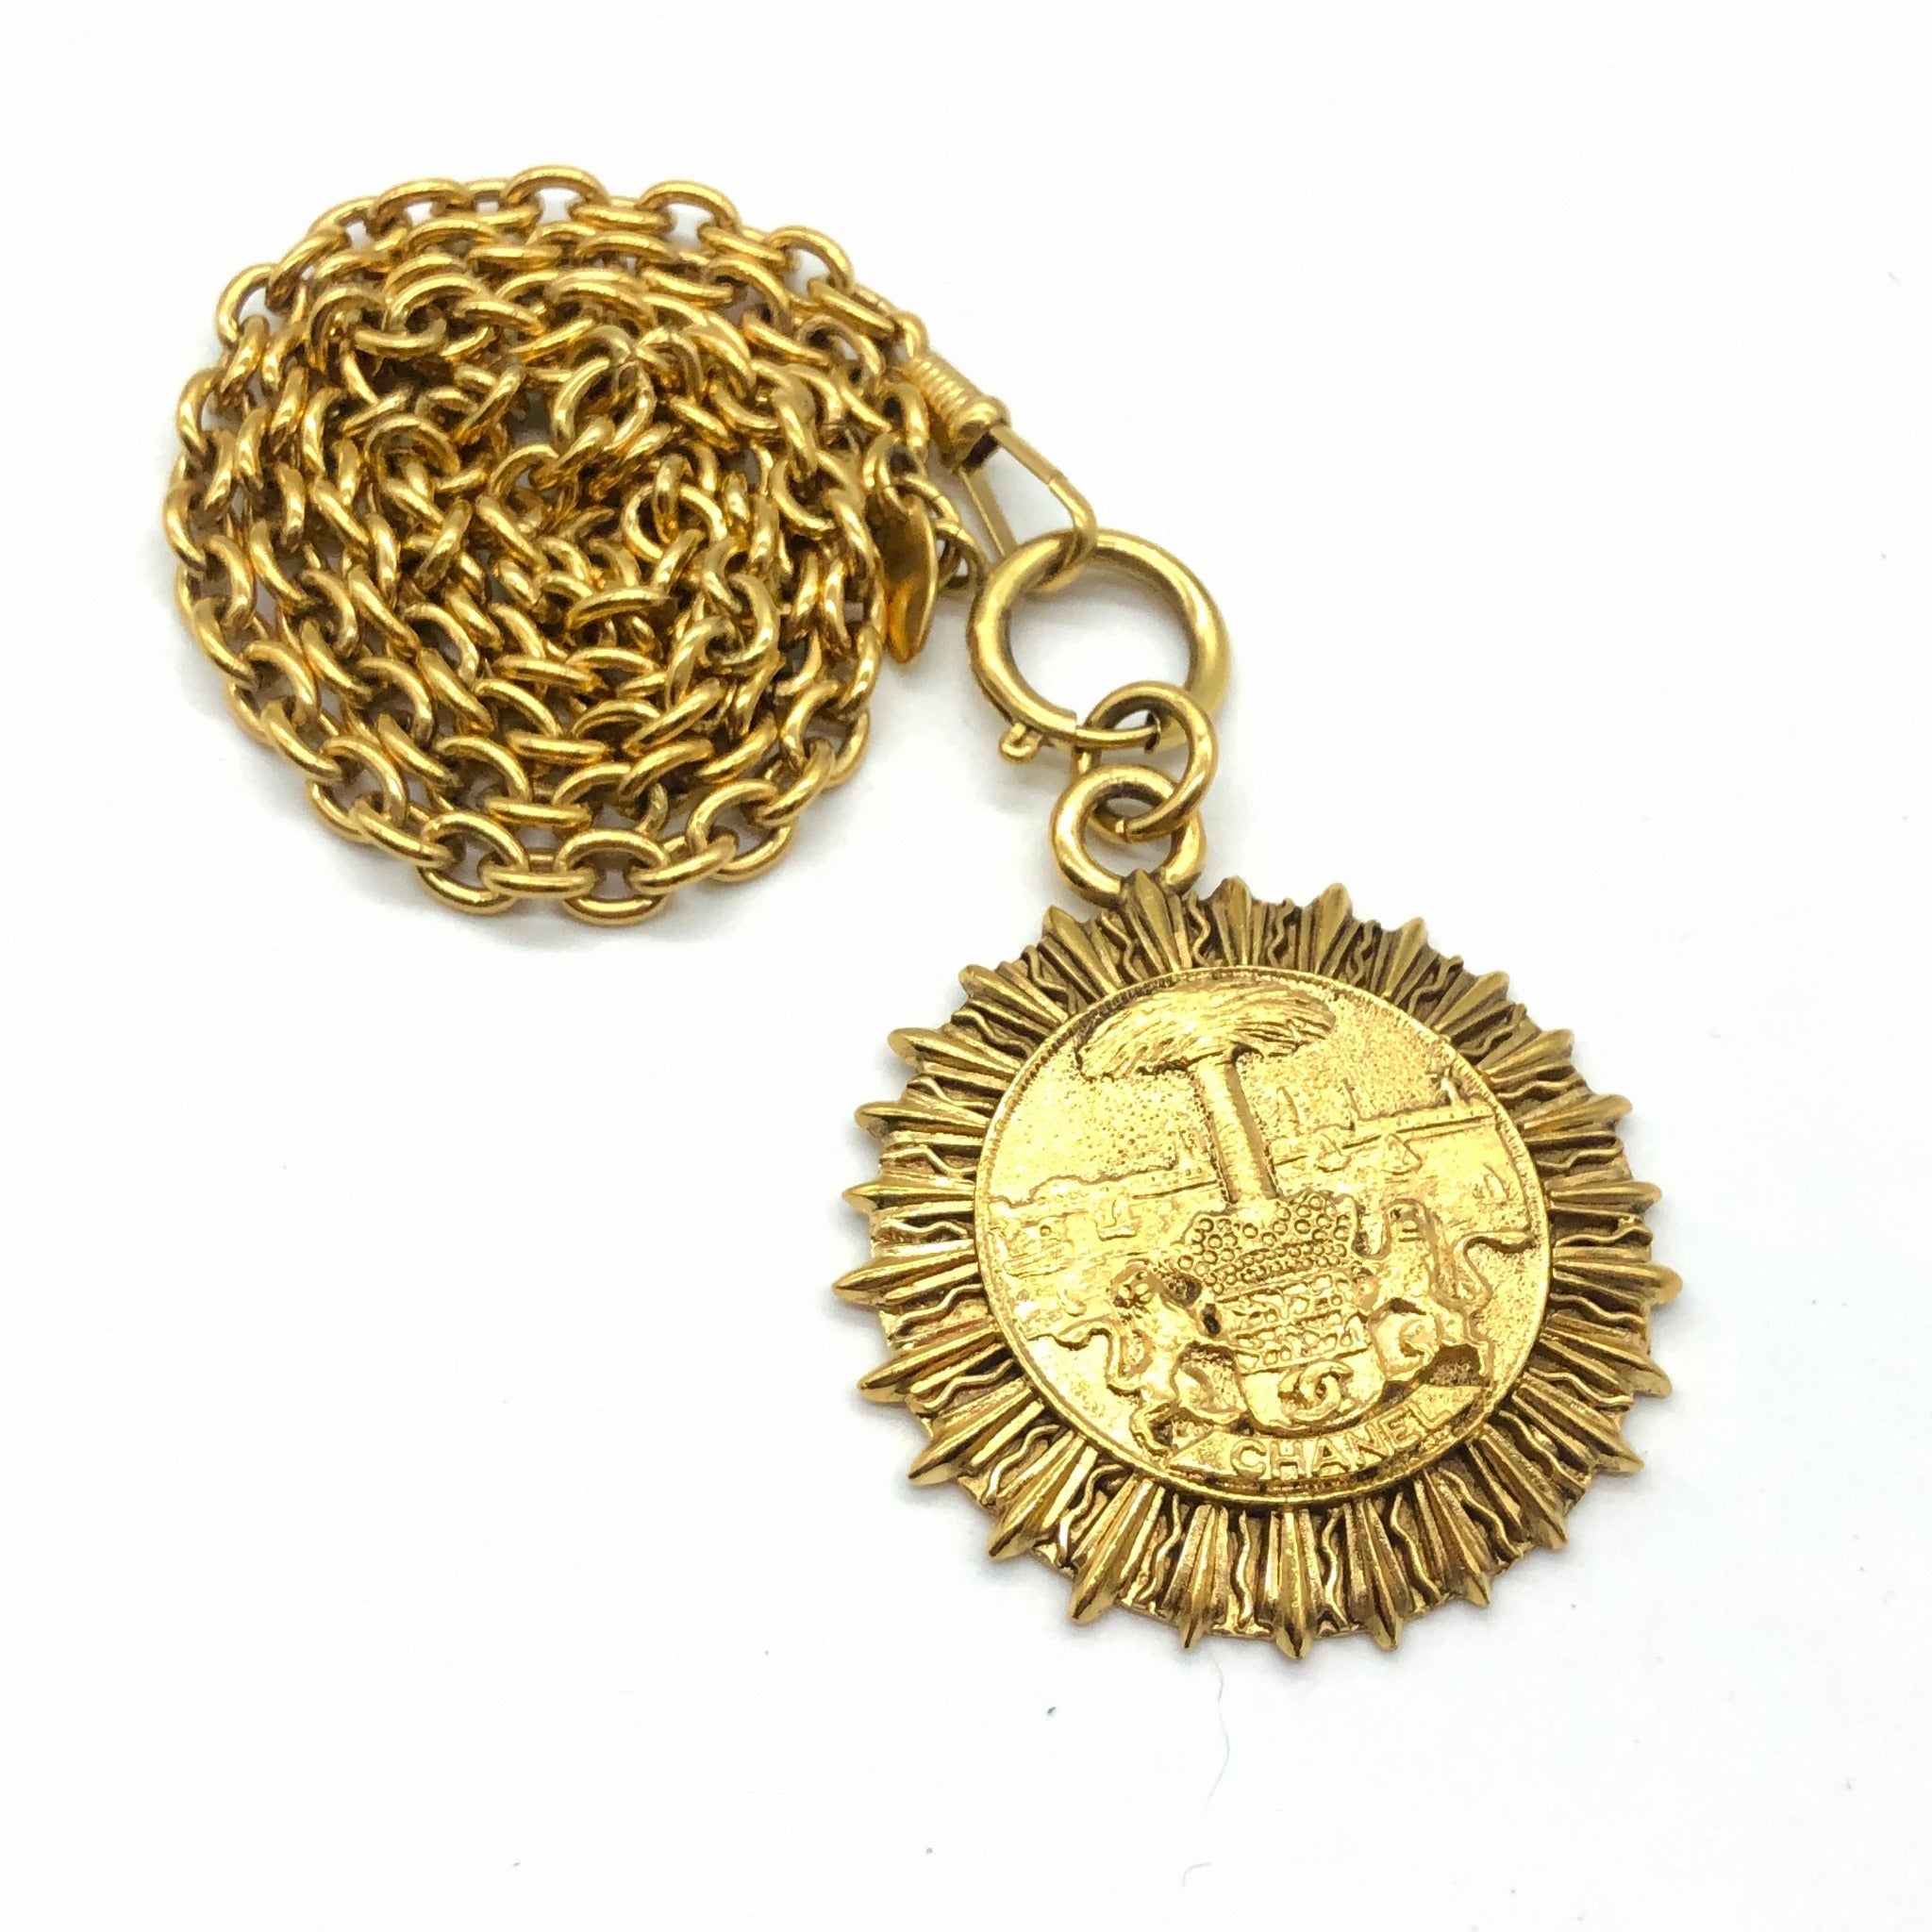 Chanel Gold-Tone Chain CC Rhinestone Pendant Necklace